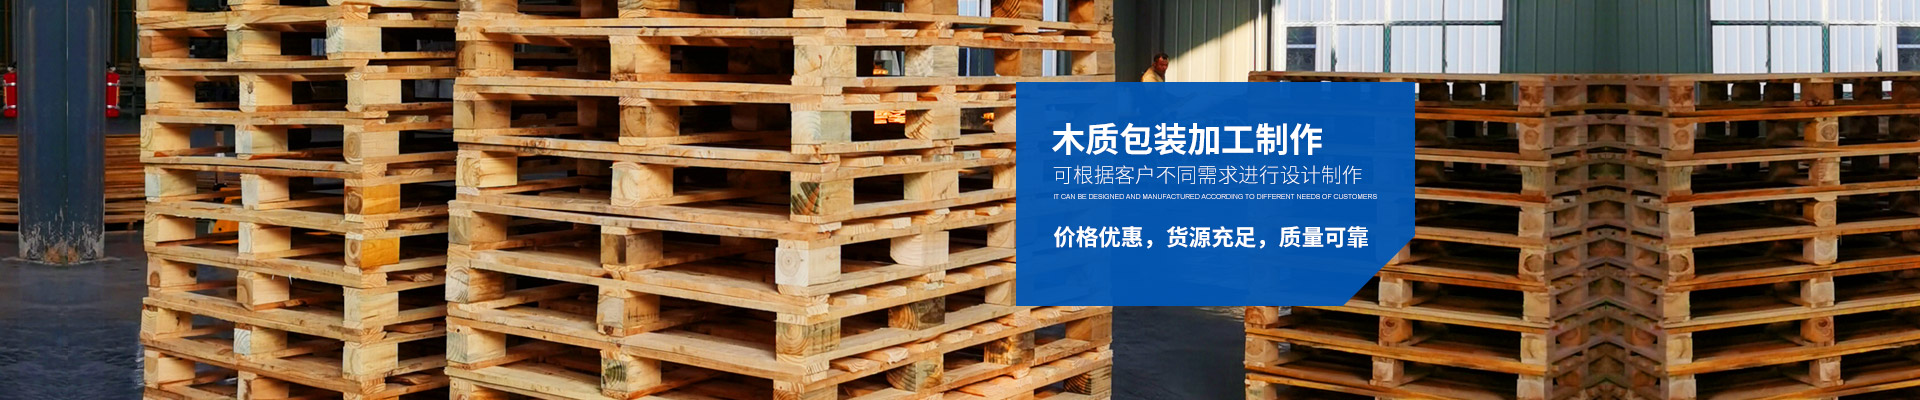 岳阳富鸿包装-887700葡京线路检测有限公司_岳阳木质包装|岳阳木托盘